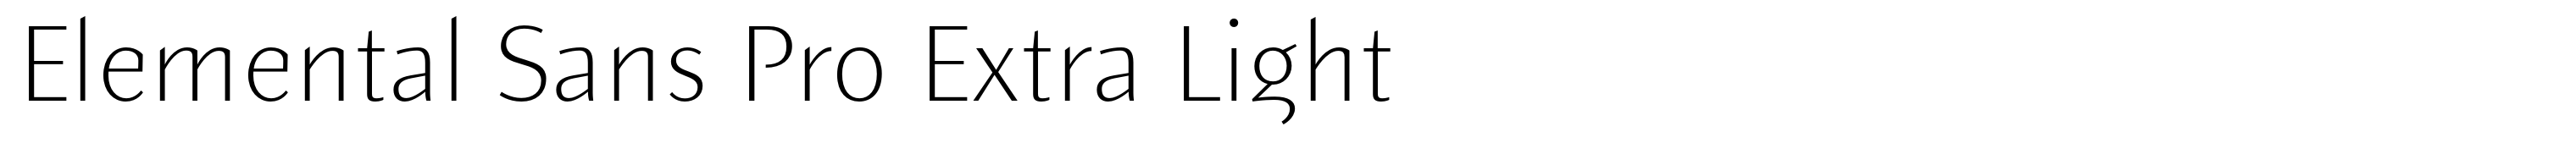 Elemental Sans Pro Extra Light